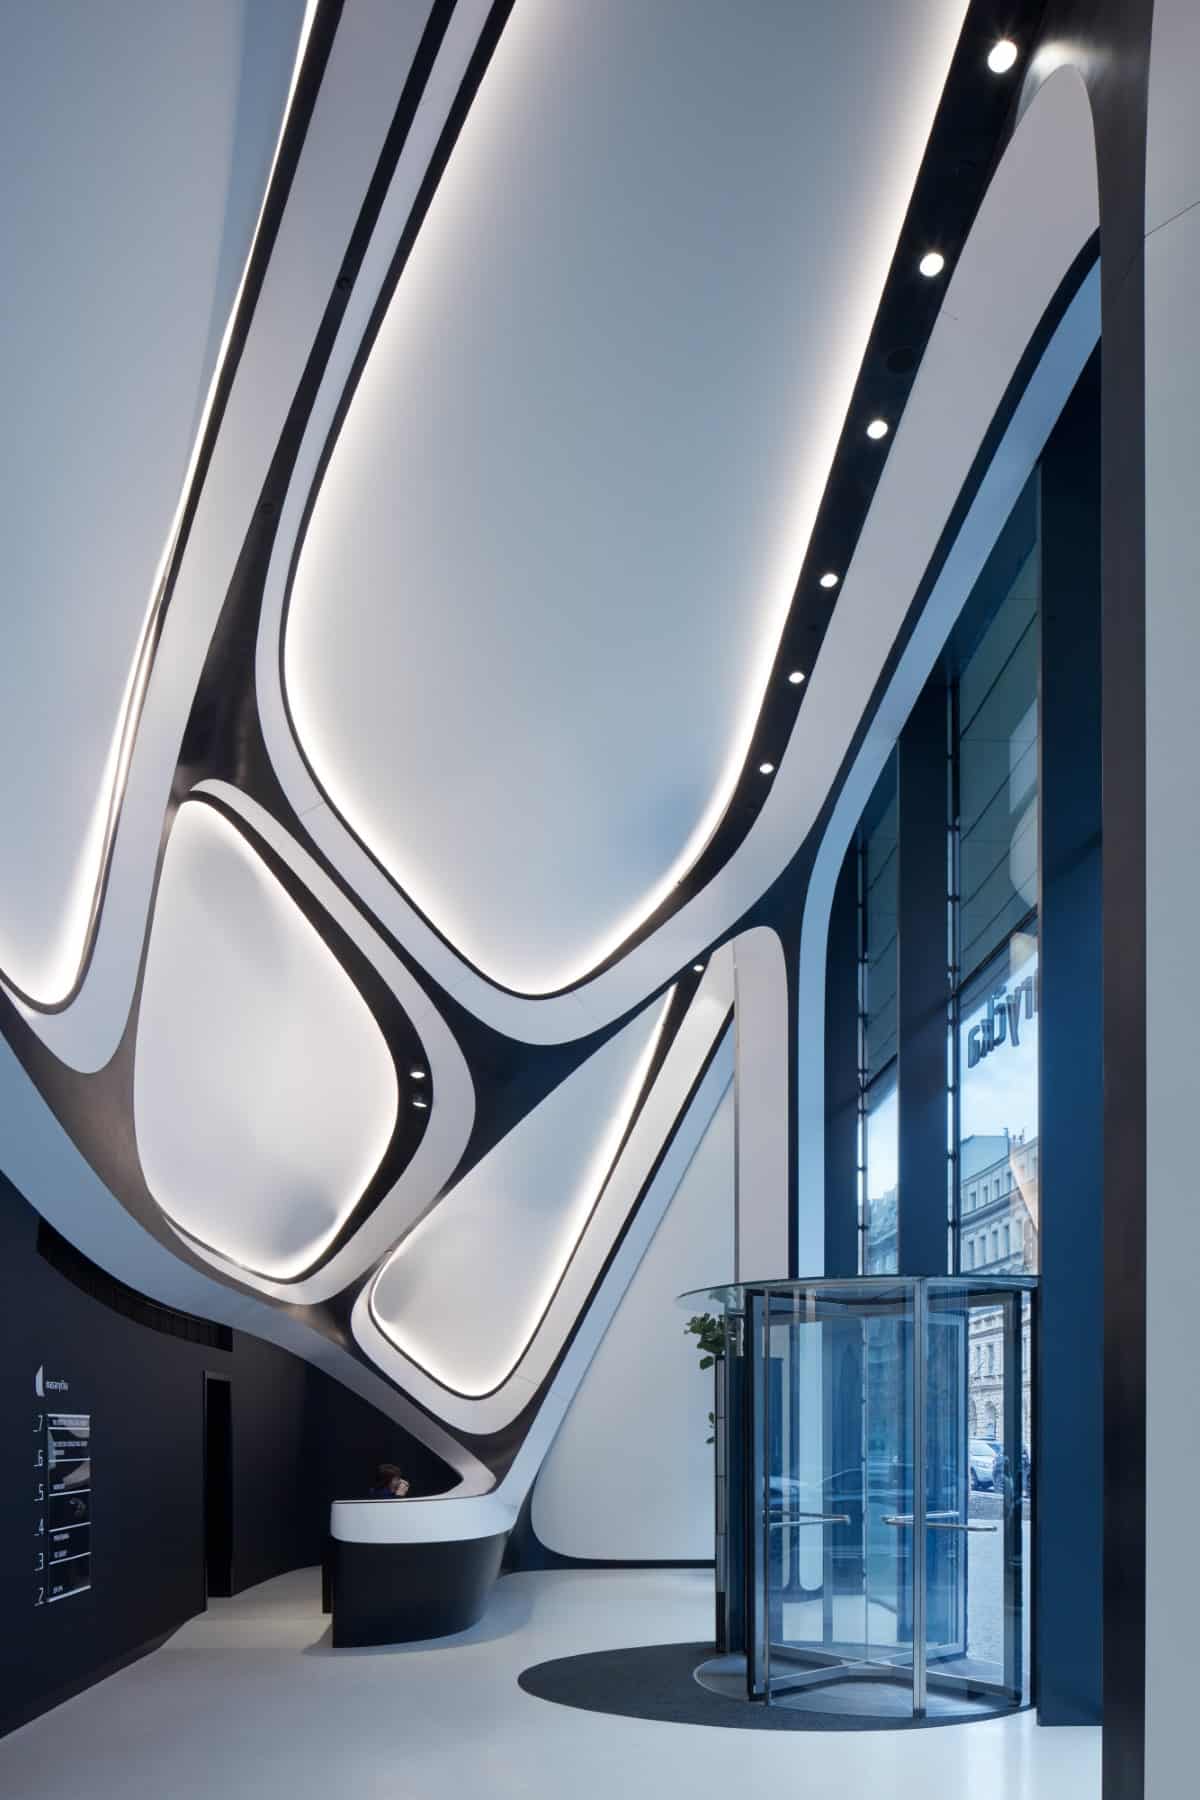 Masaryčka Building Interior by Zaha Hadid Architects 